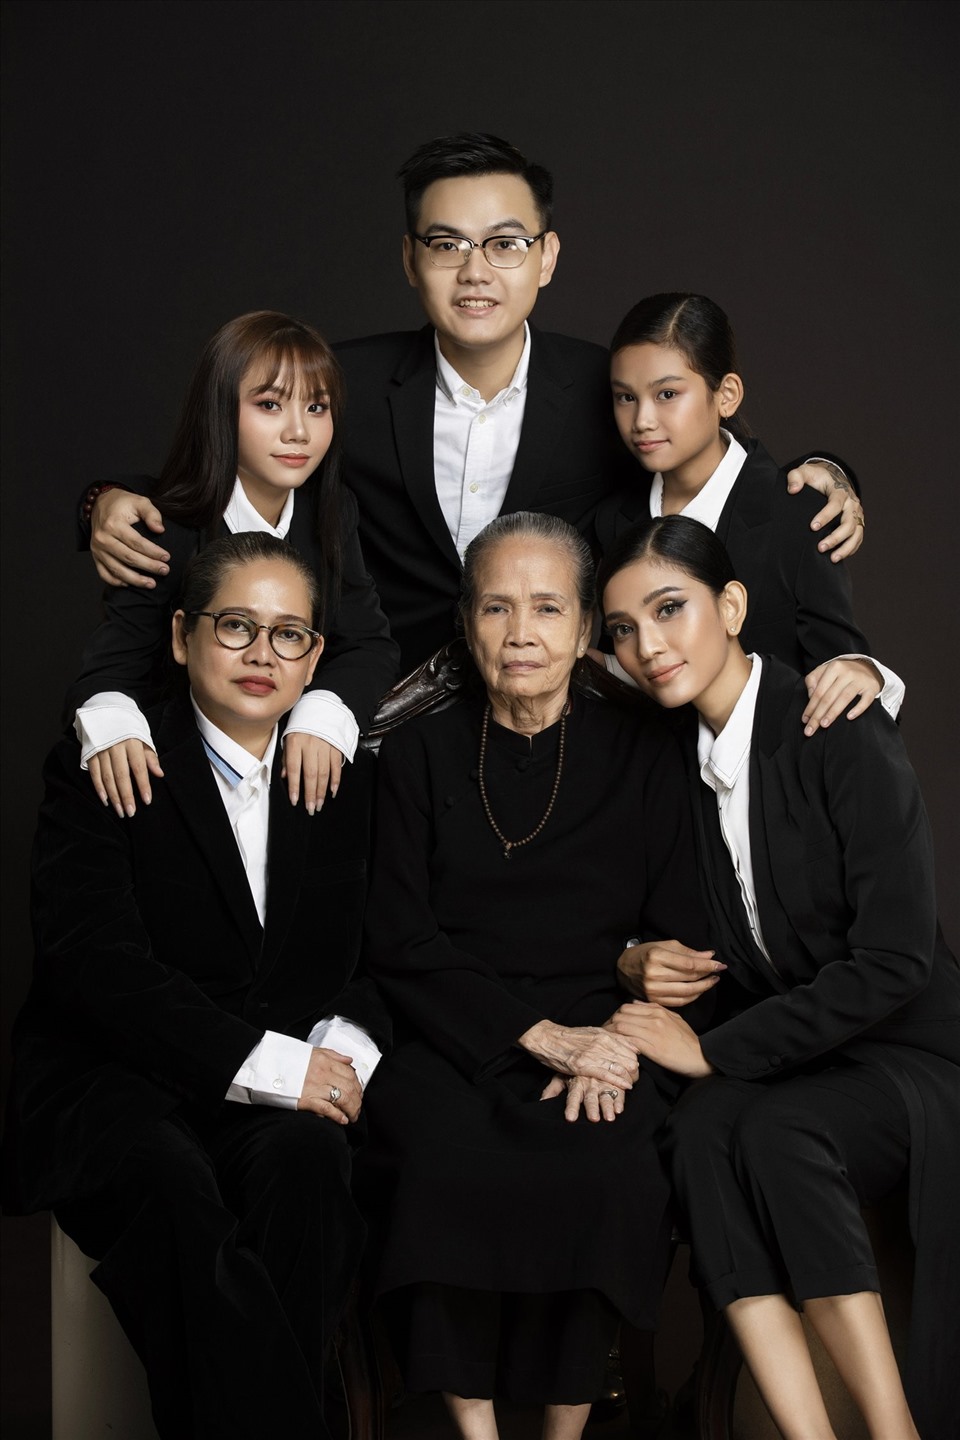 Trương Thị May cho biết bản thân rất trân trọng những khoảnh khắc này bởi bà ngoại và mẹ đã lớn tuổi, không còn nhiều cơ hội để chụp ảnh cùng nhau.